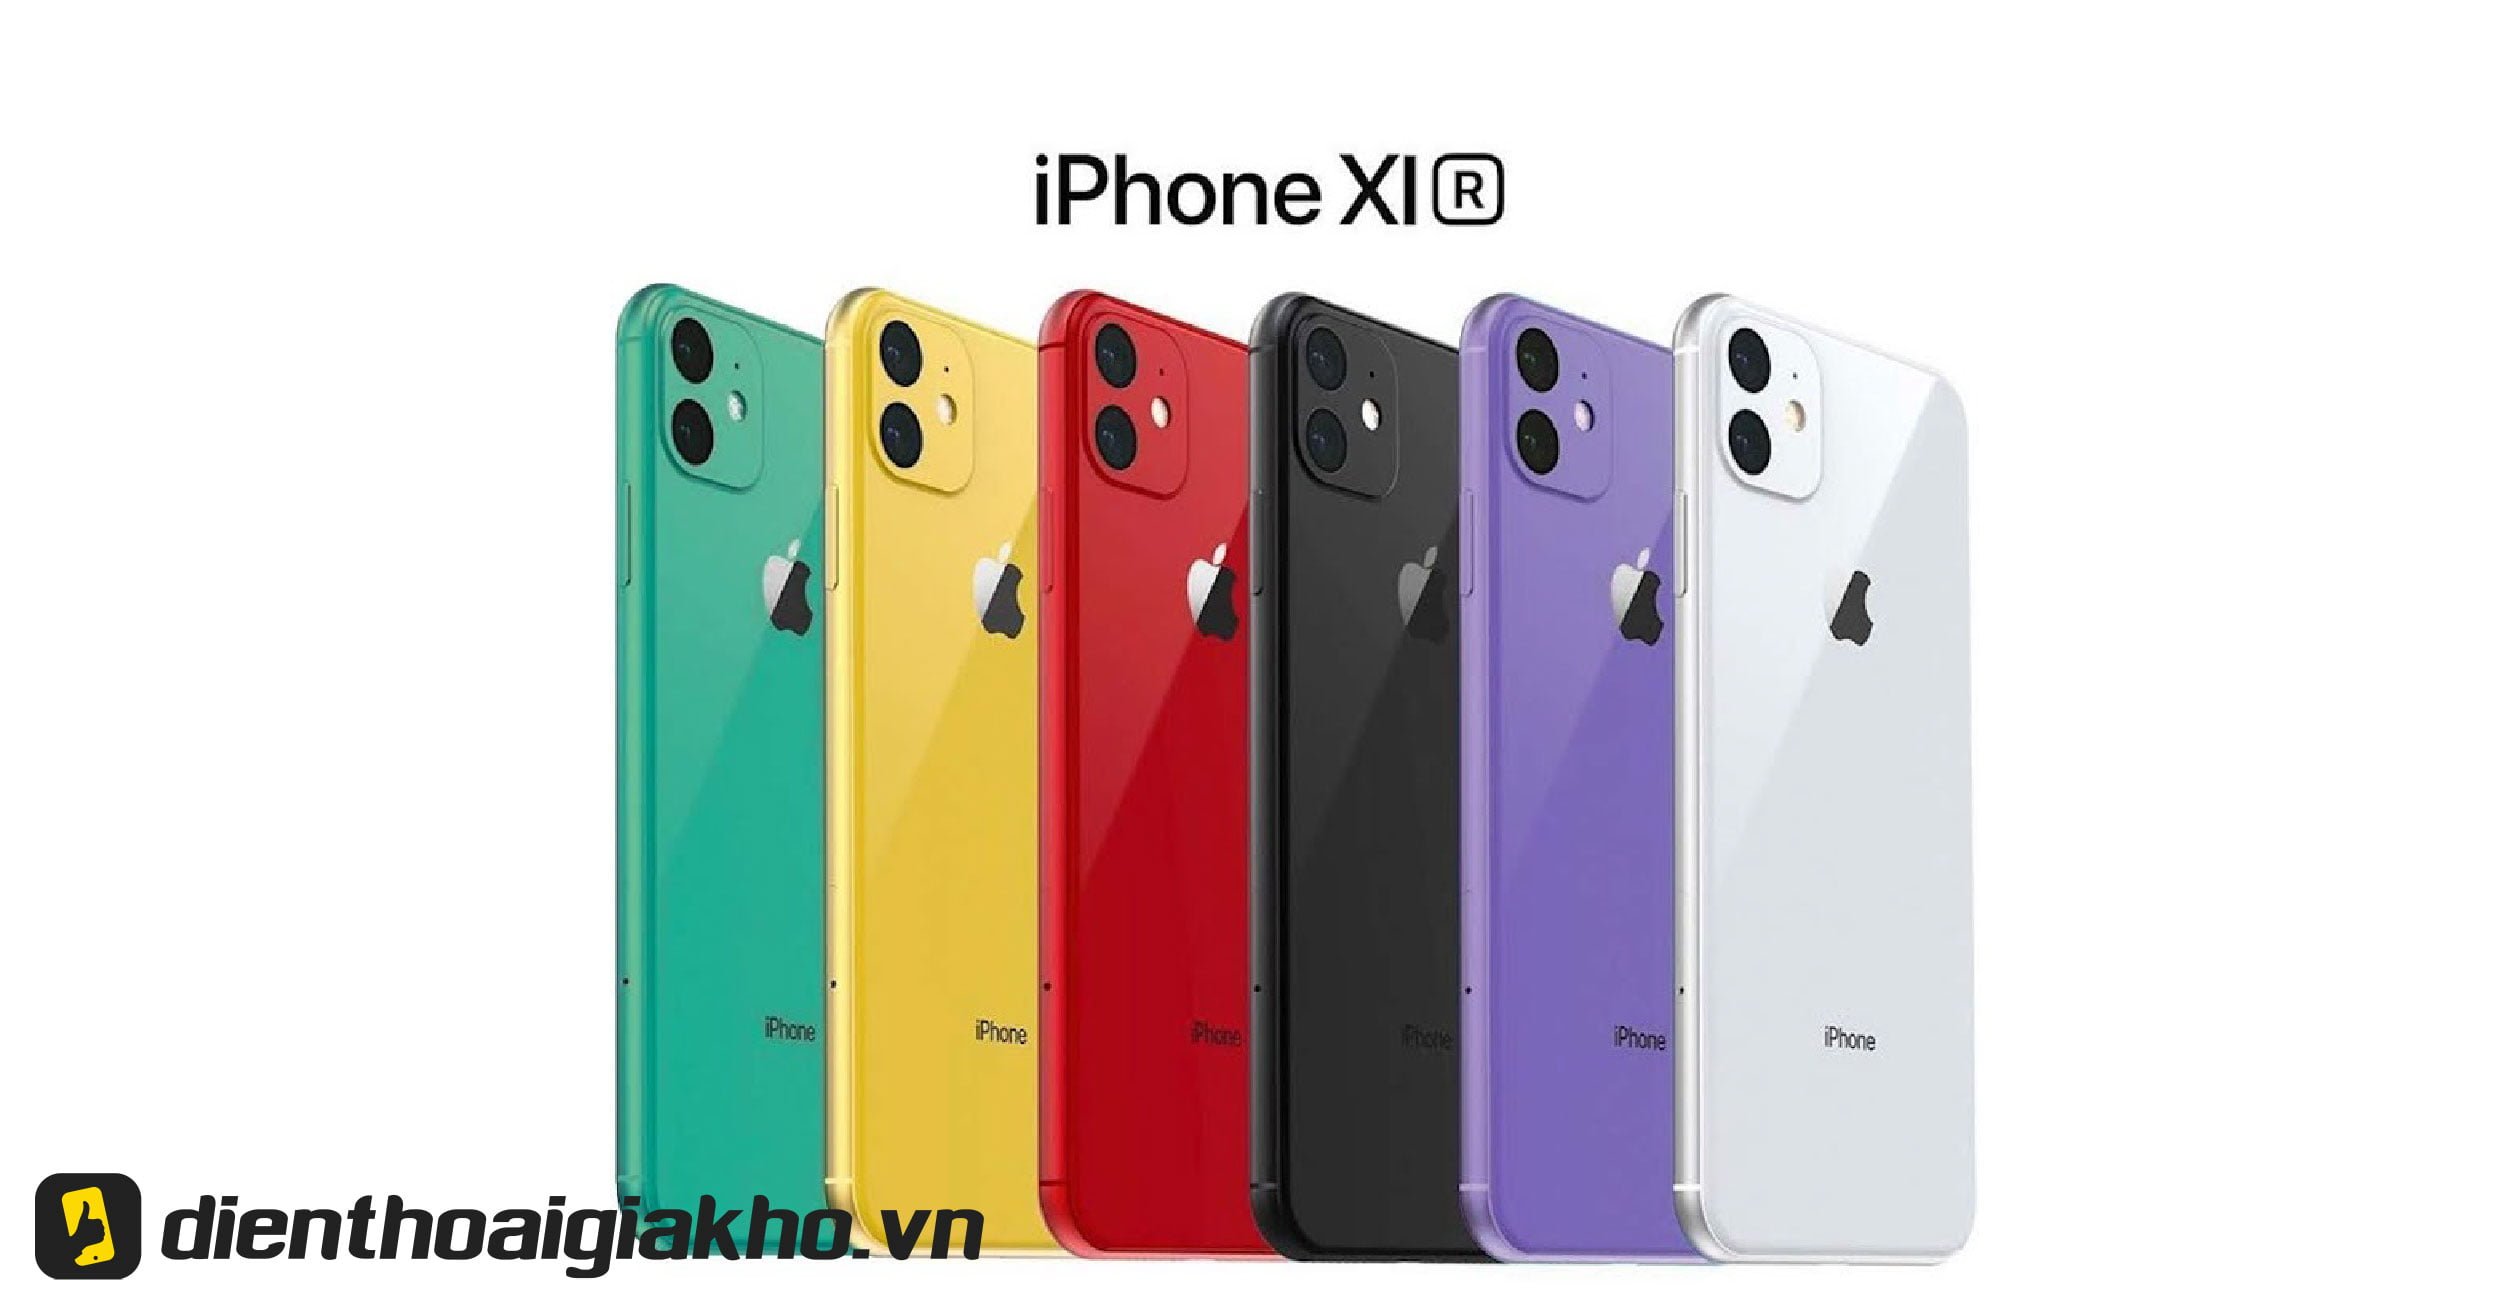 iPhone 11 Series - Táo Giá Rẻ